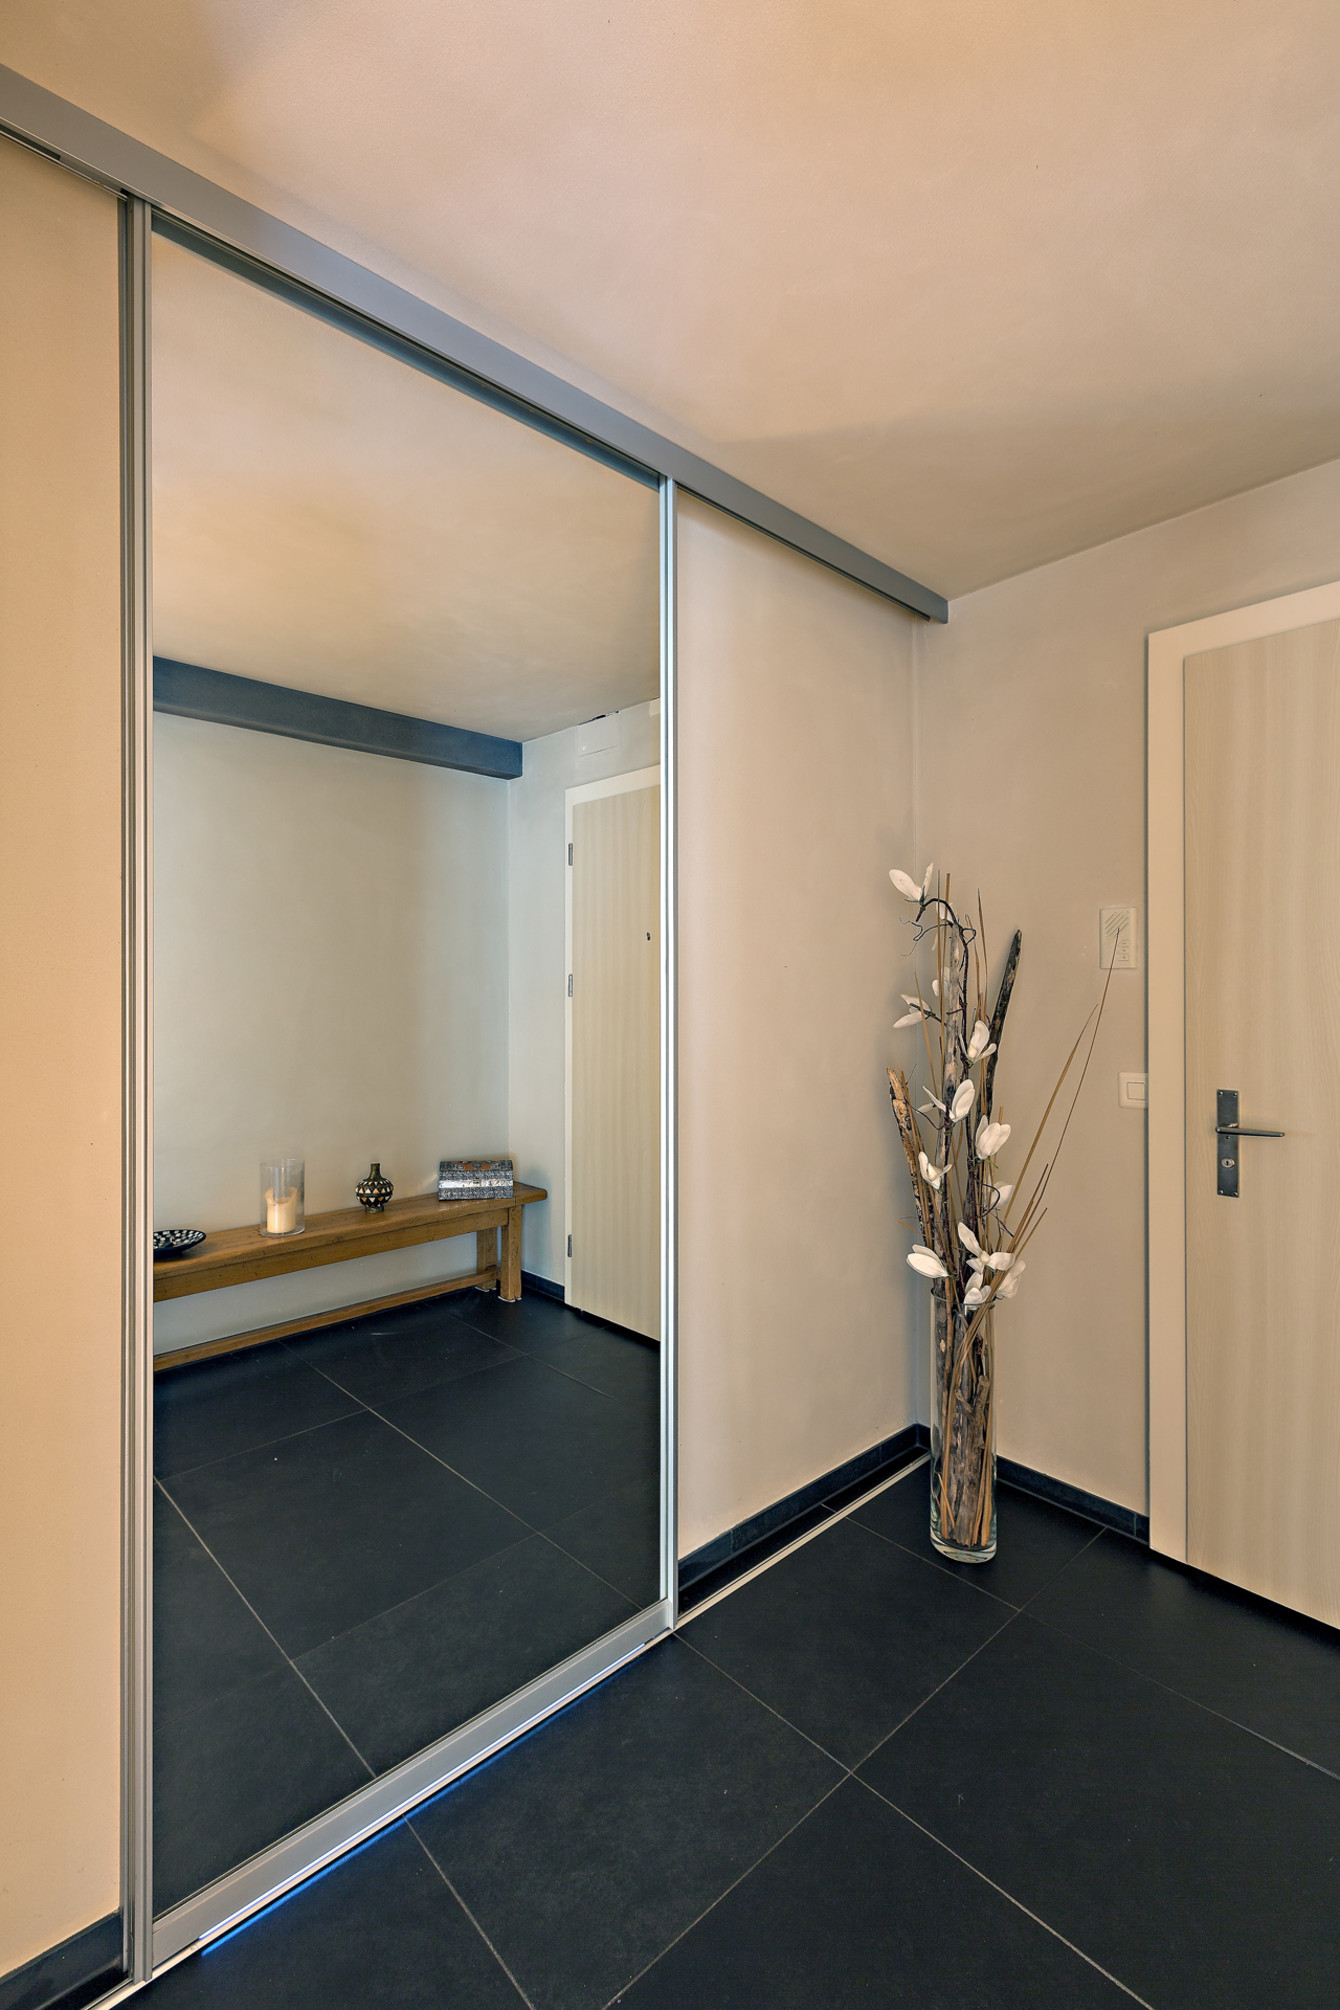 Der übergrosse Spiegel verbirgt den Eingang ins Bad - ausgeführt als bewegliche Schiebetür